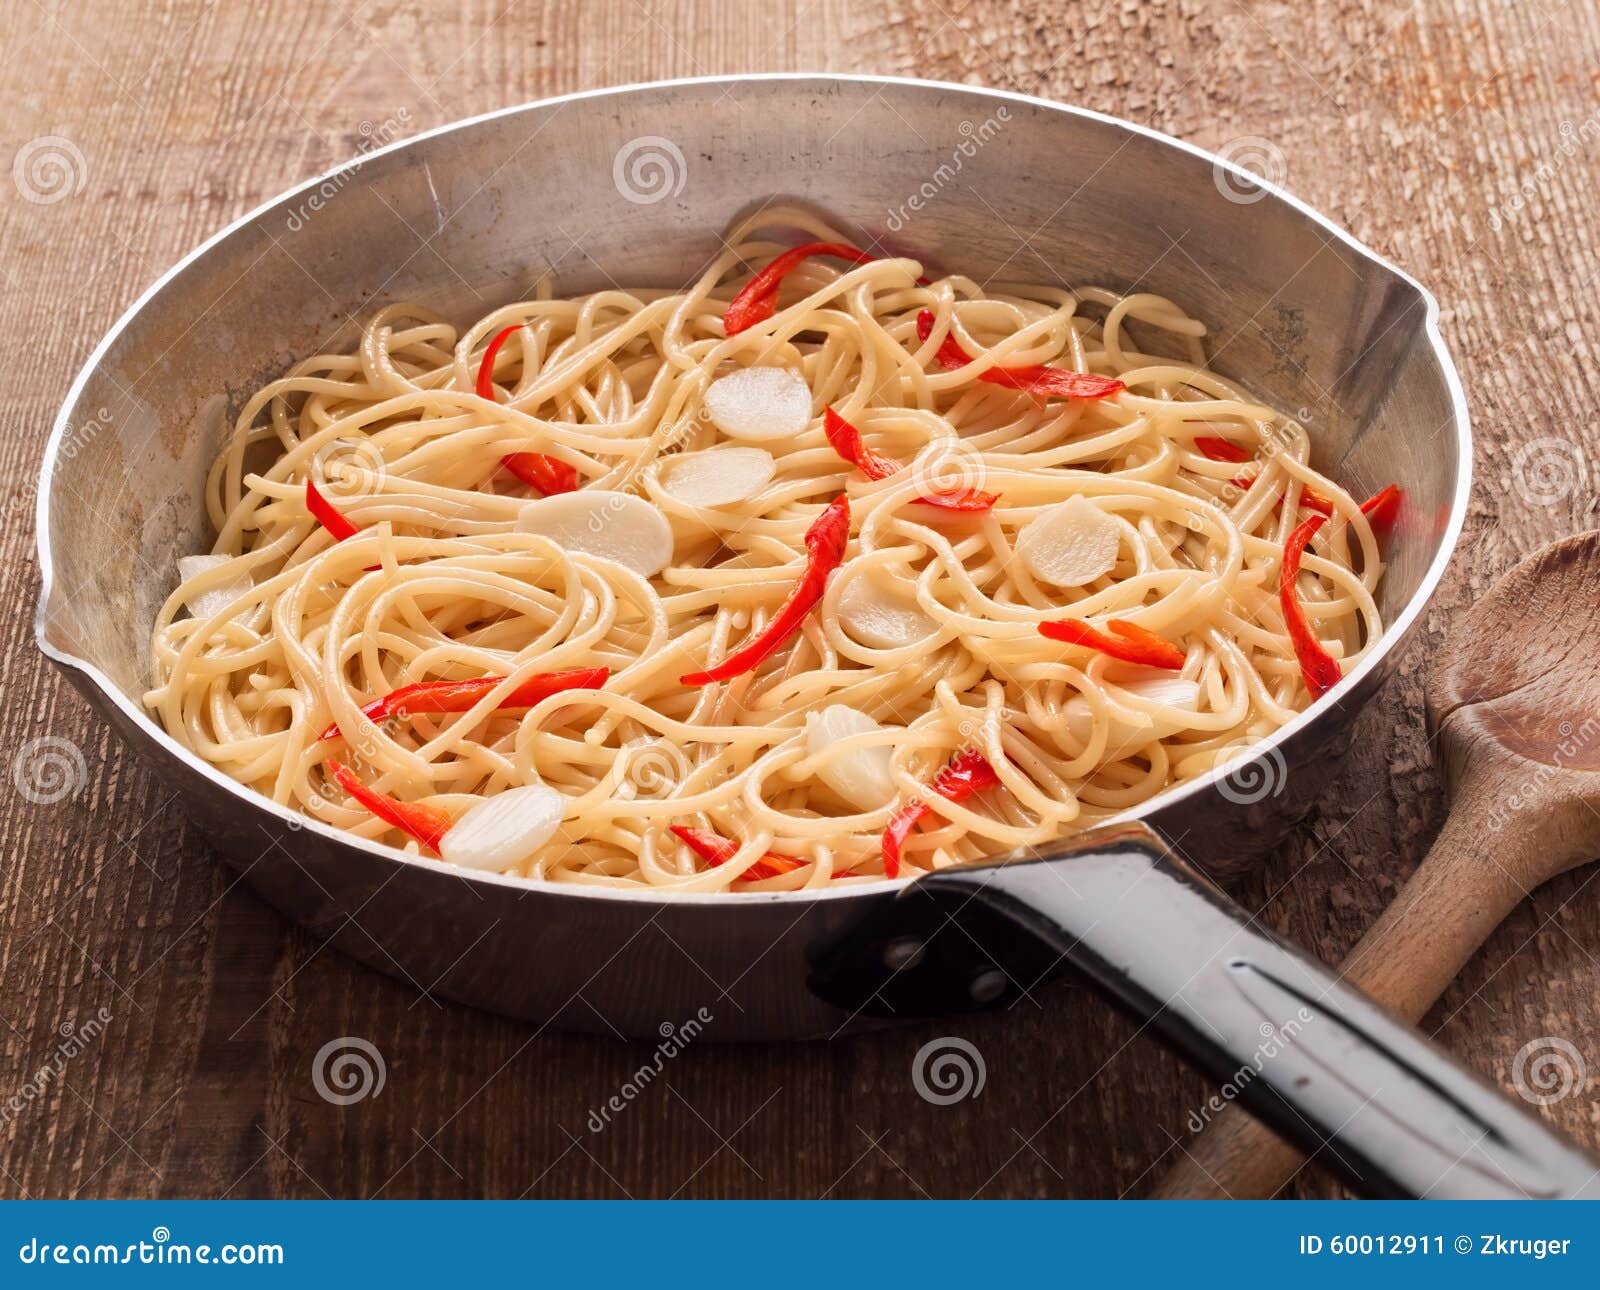 rustic traditional italian aglio olio spaghetti pasta